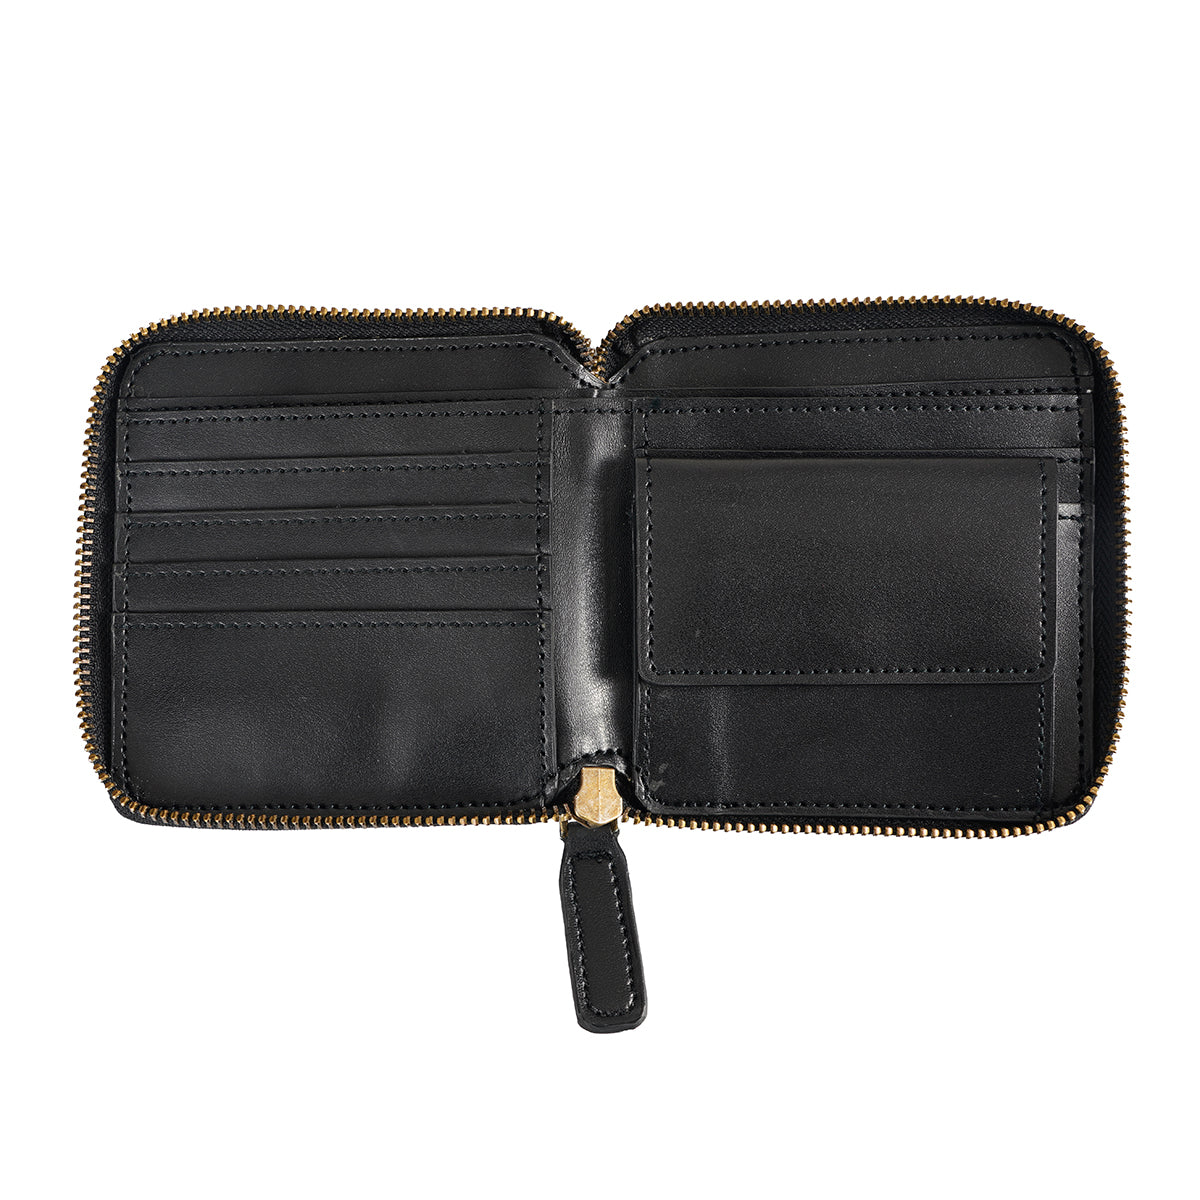 Black color vegan apple leather wallet